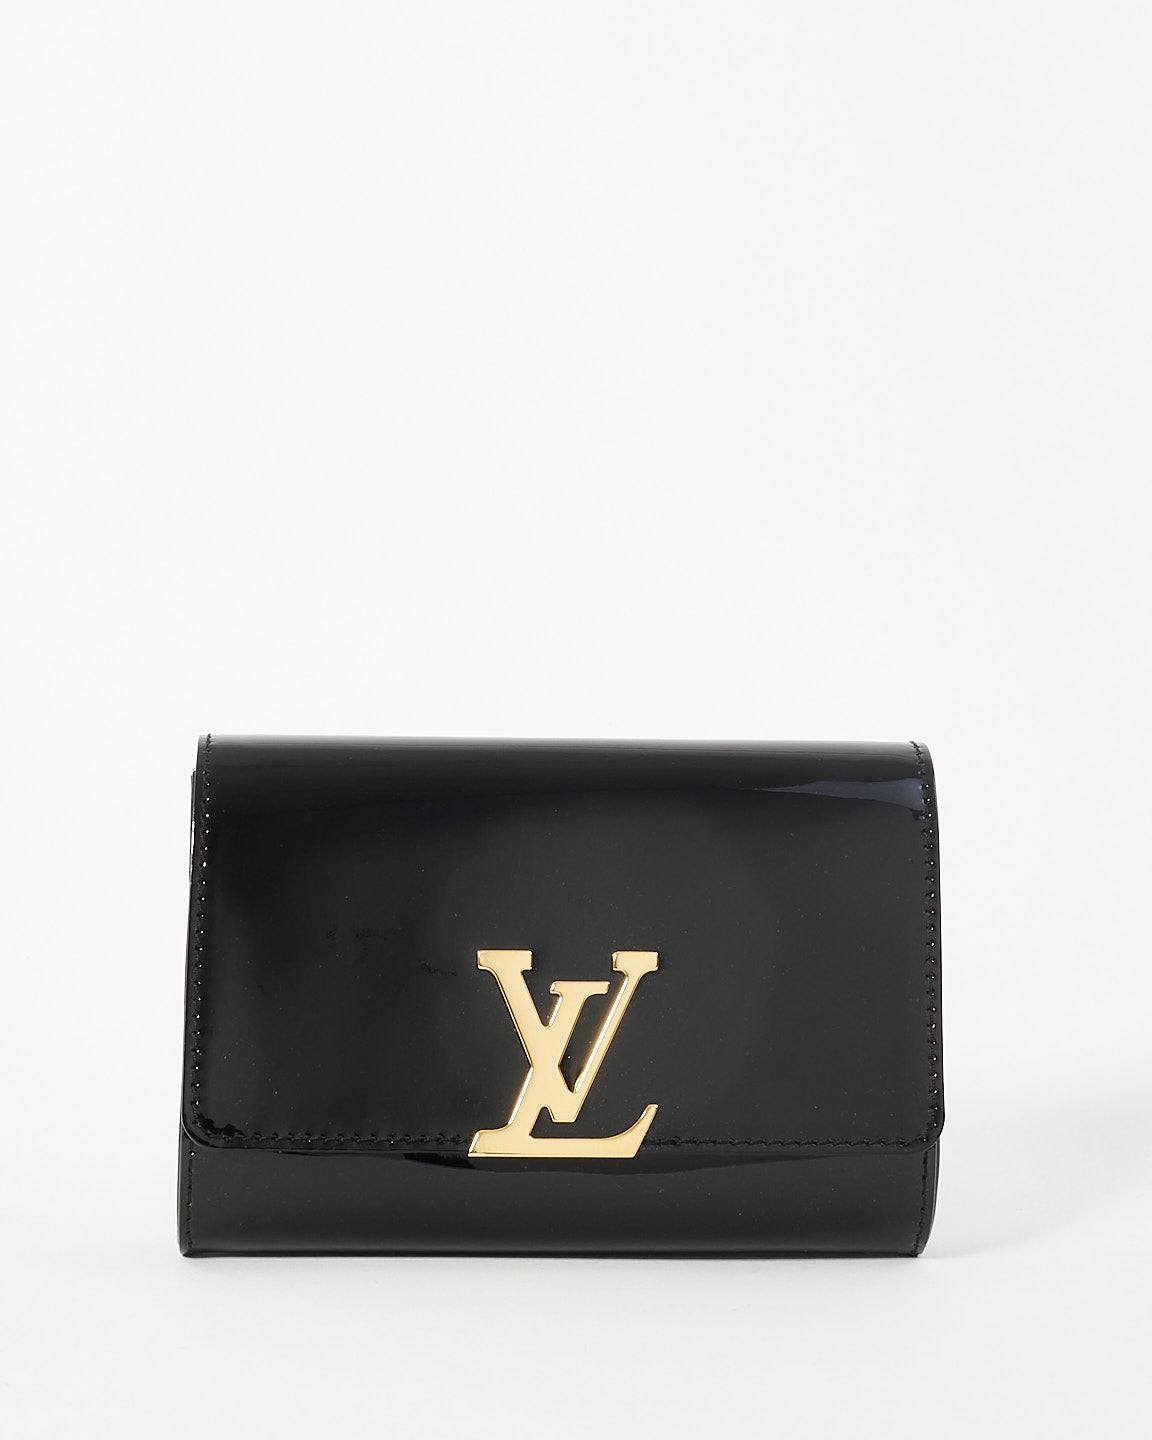 Louis Vuitton Sac Louise PM en cuir verni noir avec chaîne